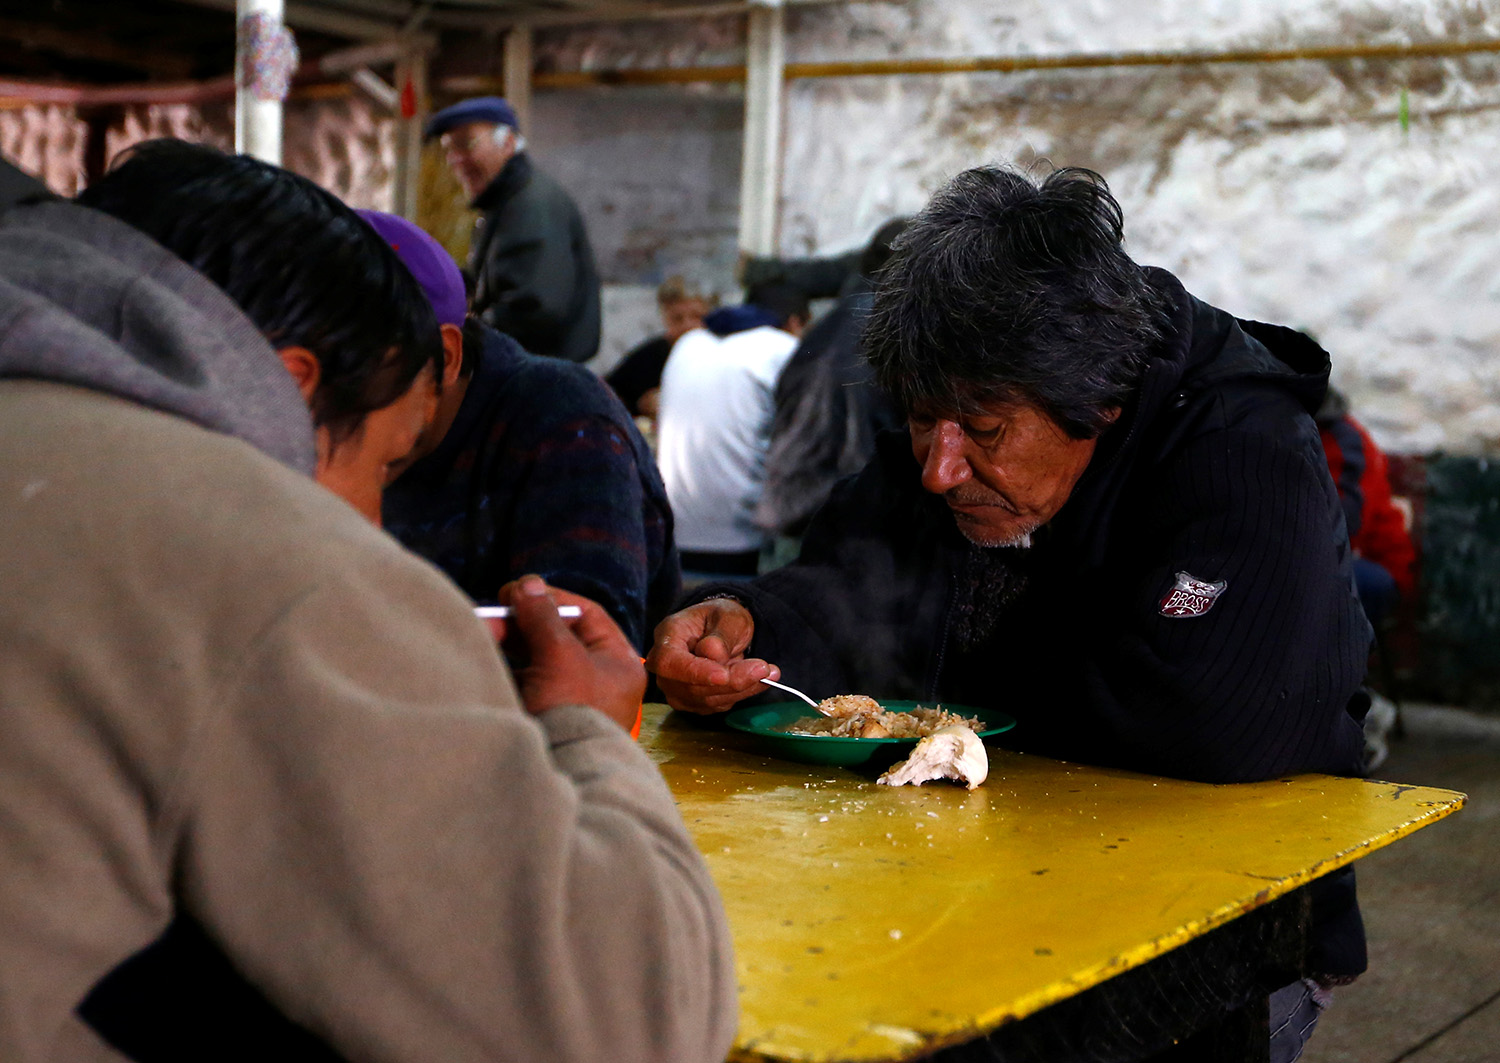 La pobreza en Argentina, un problema creciente